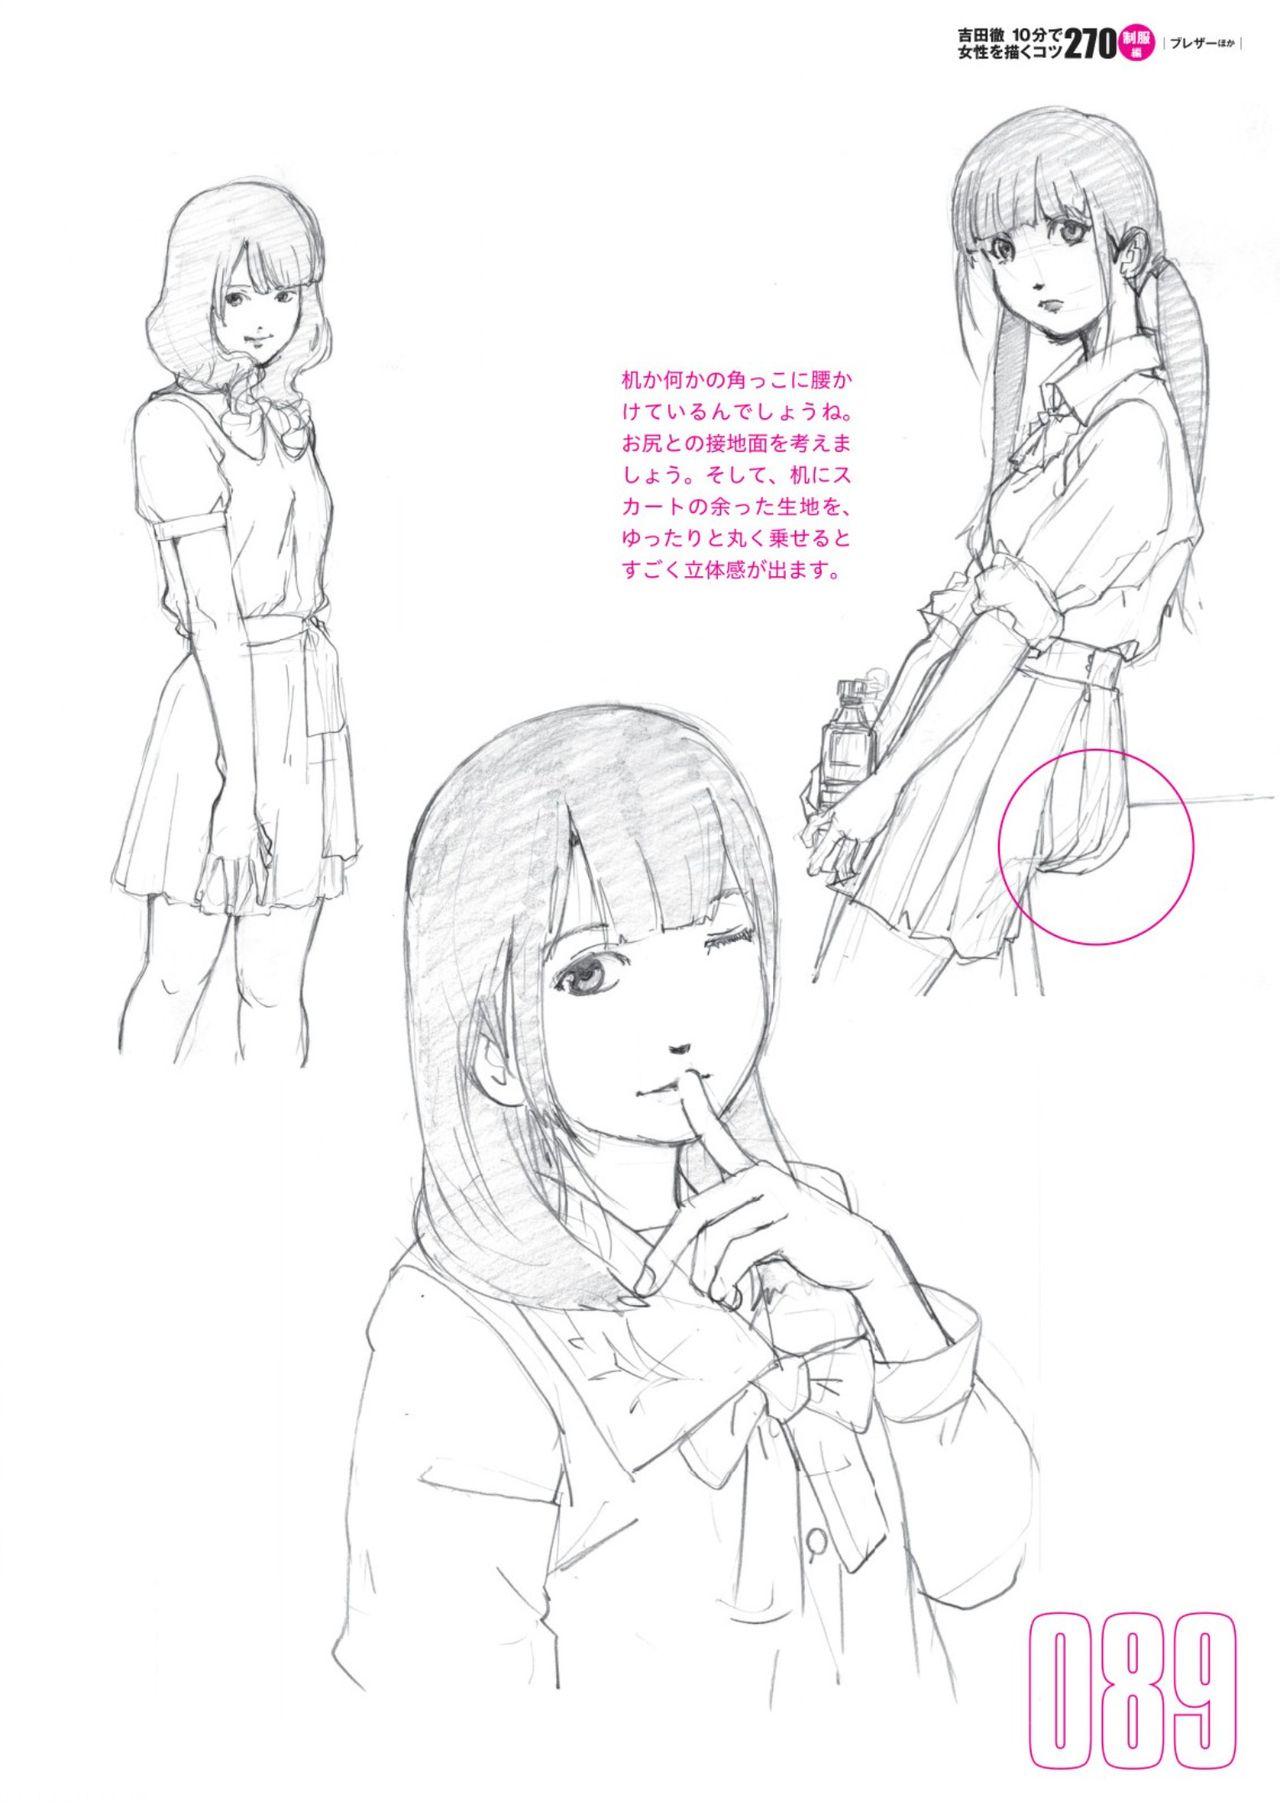 Toru Yoshida Tips for drawing women in 10 minutes 270 Uniforms 90